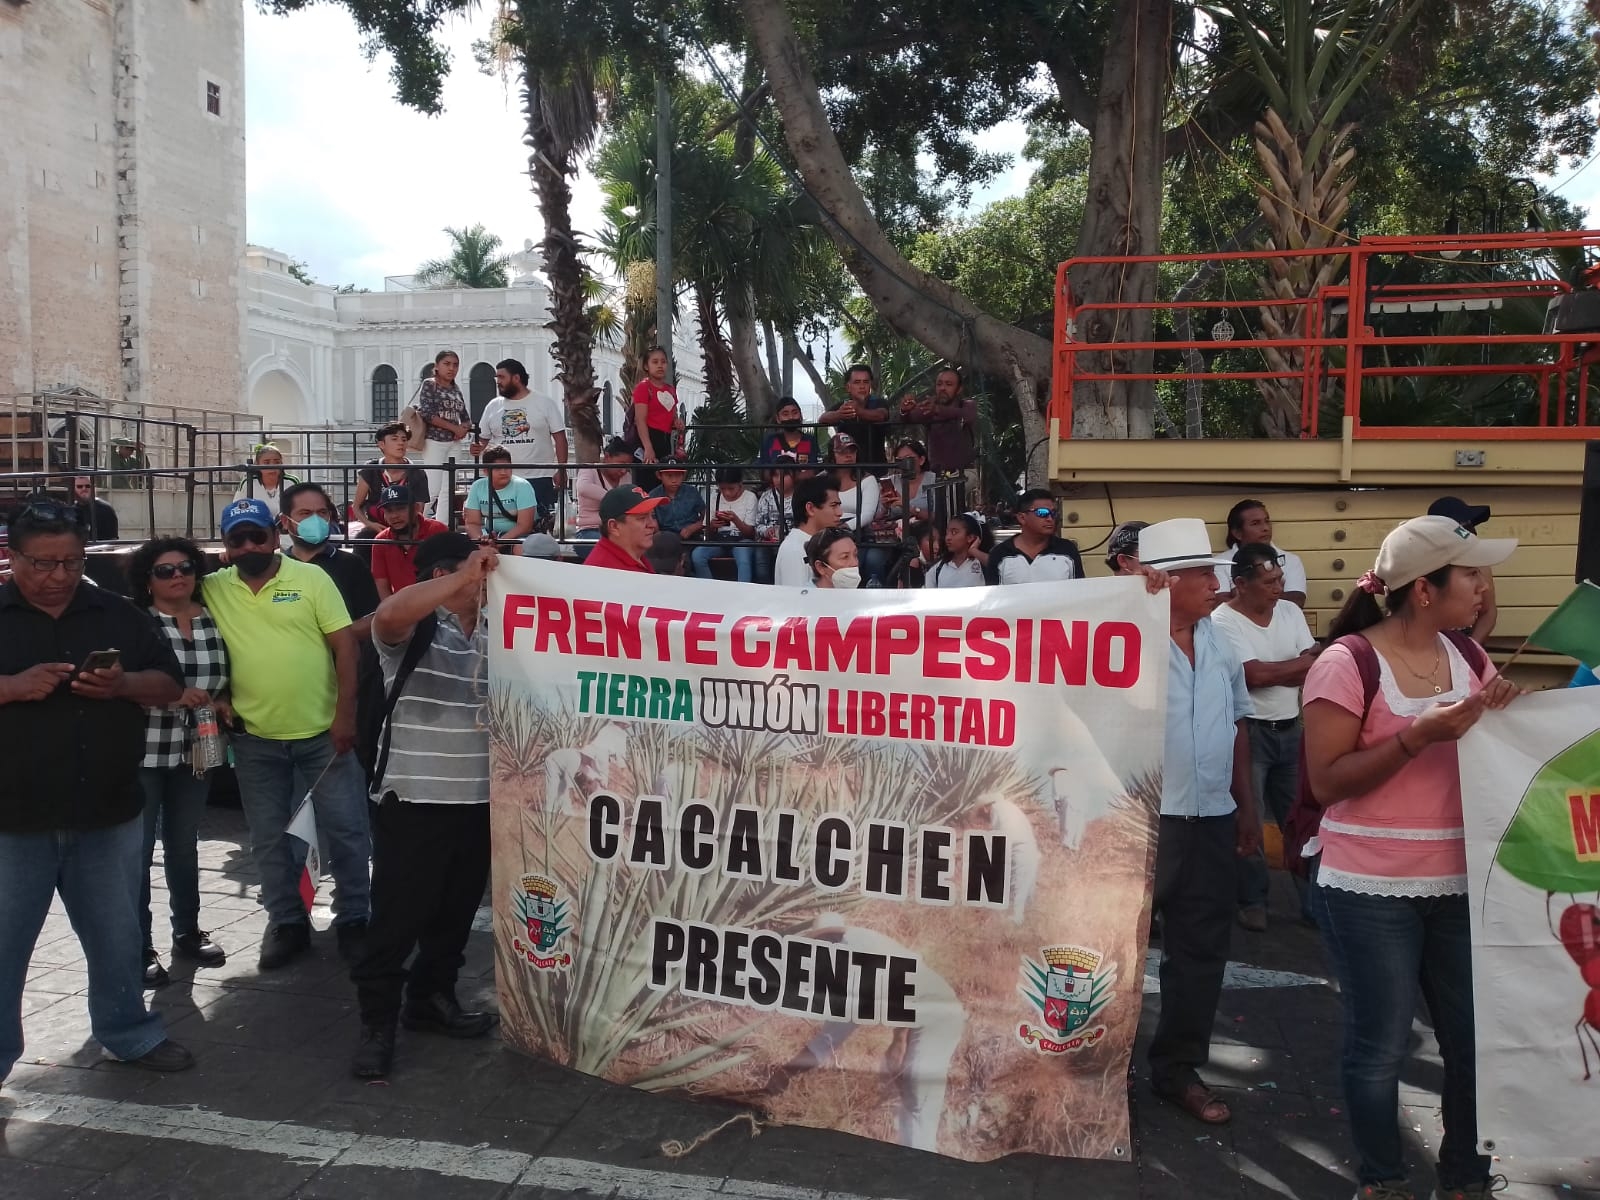 Frente campesino marcha hacia el Palacio de gobierno en Mérida; piden proteger a los ejidatarios